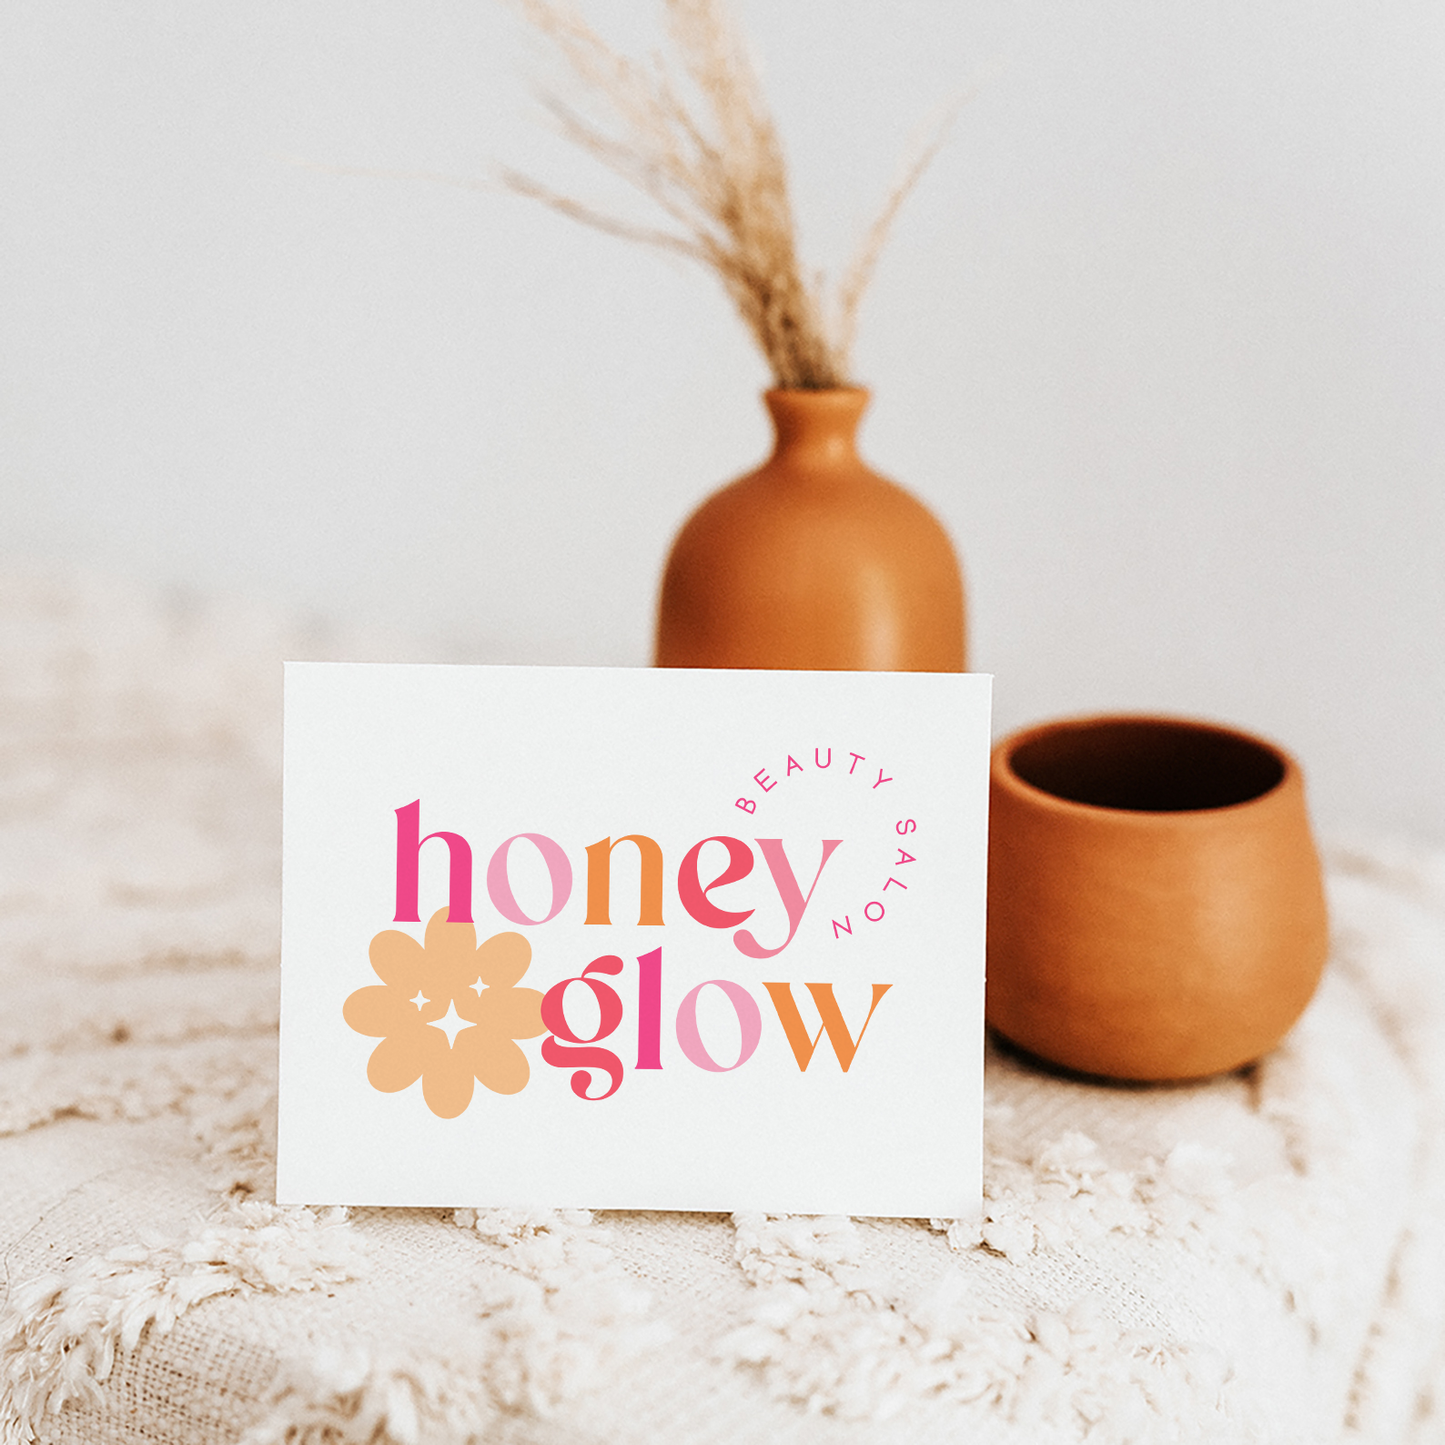 Honey Glow | Premade Logo Design | Bright Boho, Colorful, Modern Retro